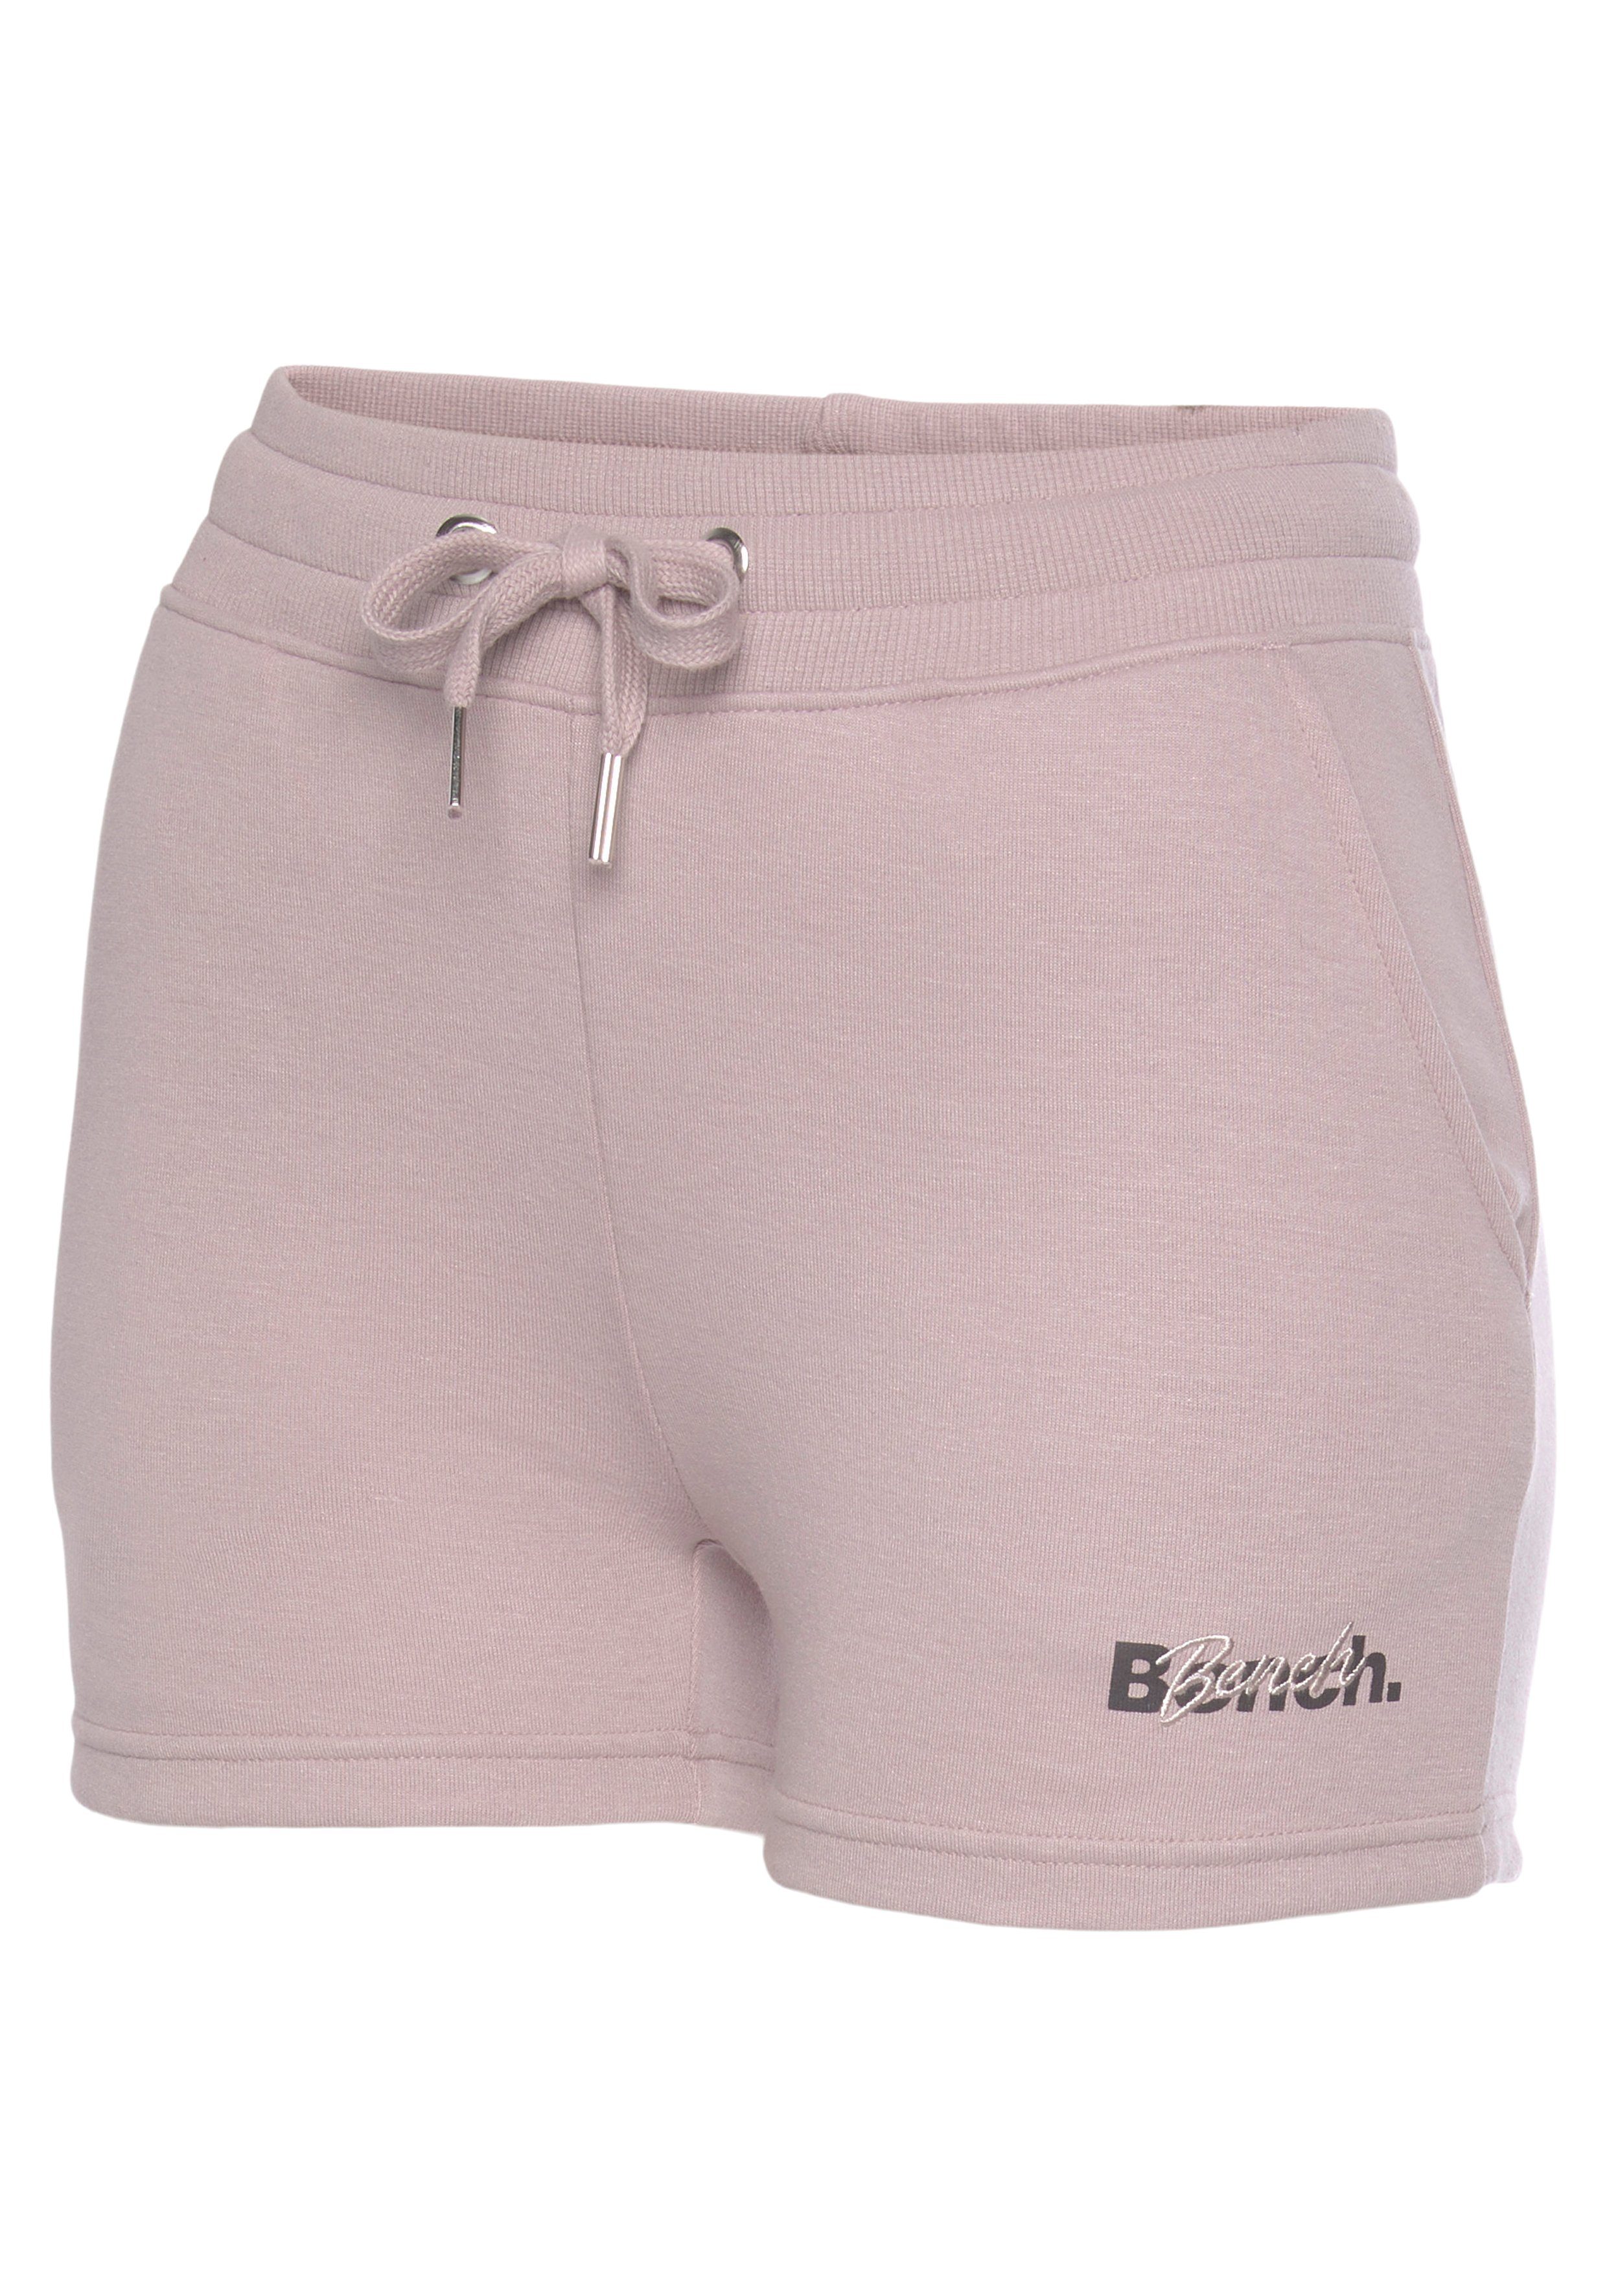 Bench. Loungewear mit Stickerei Shorts und Logodruck rauchrosa